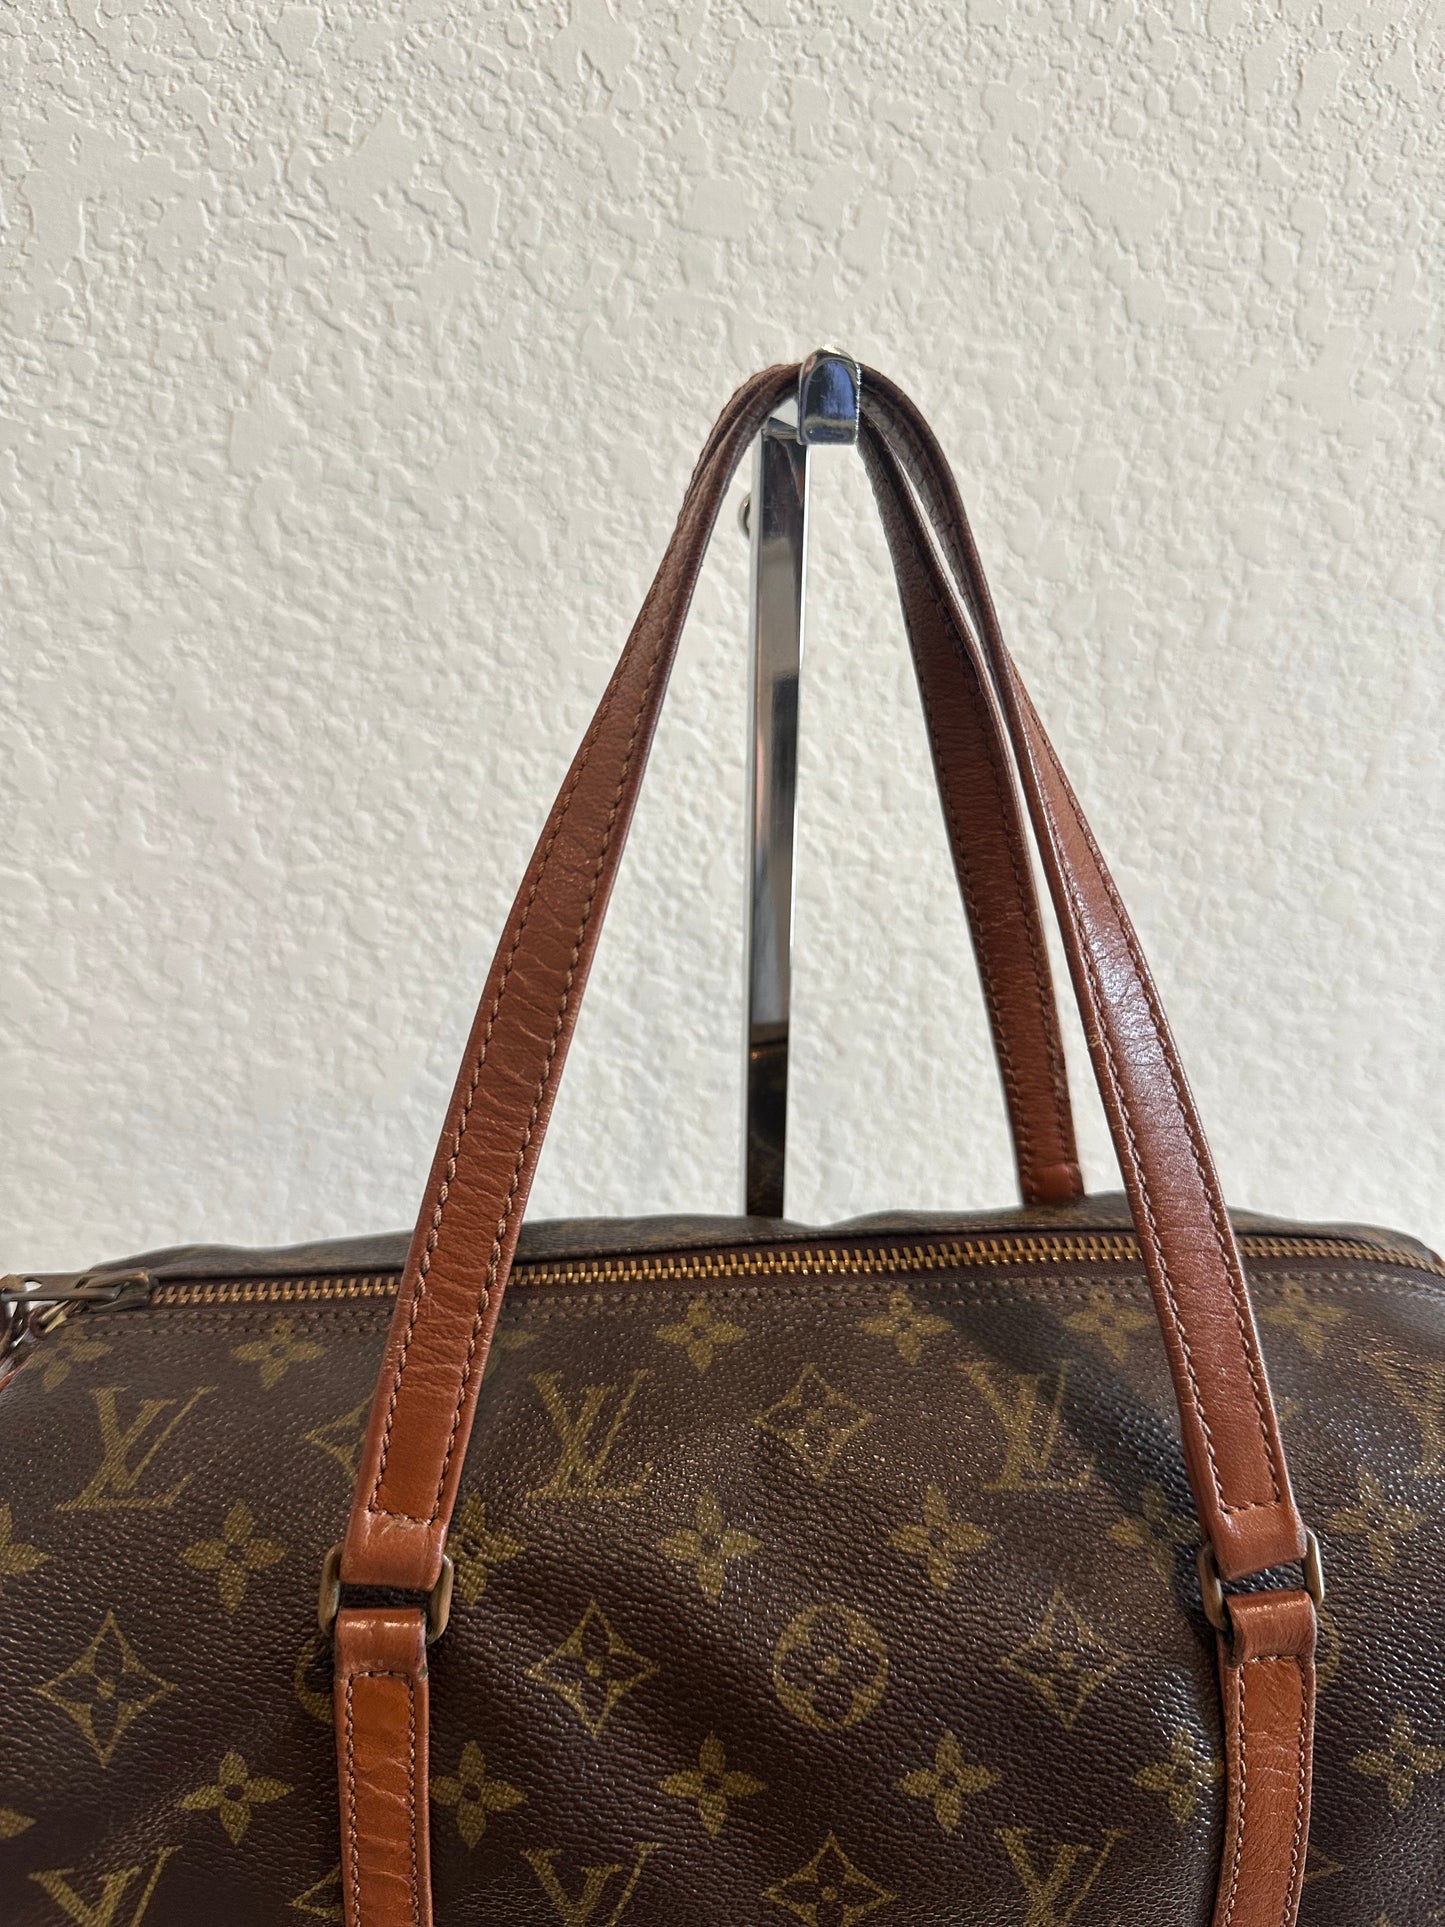 Pre-owned Authentic Louis Vuitton Papillon 26 Monogram Handbag